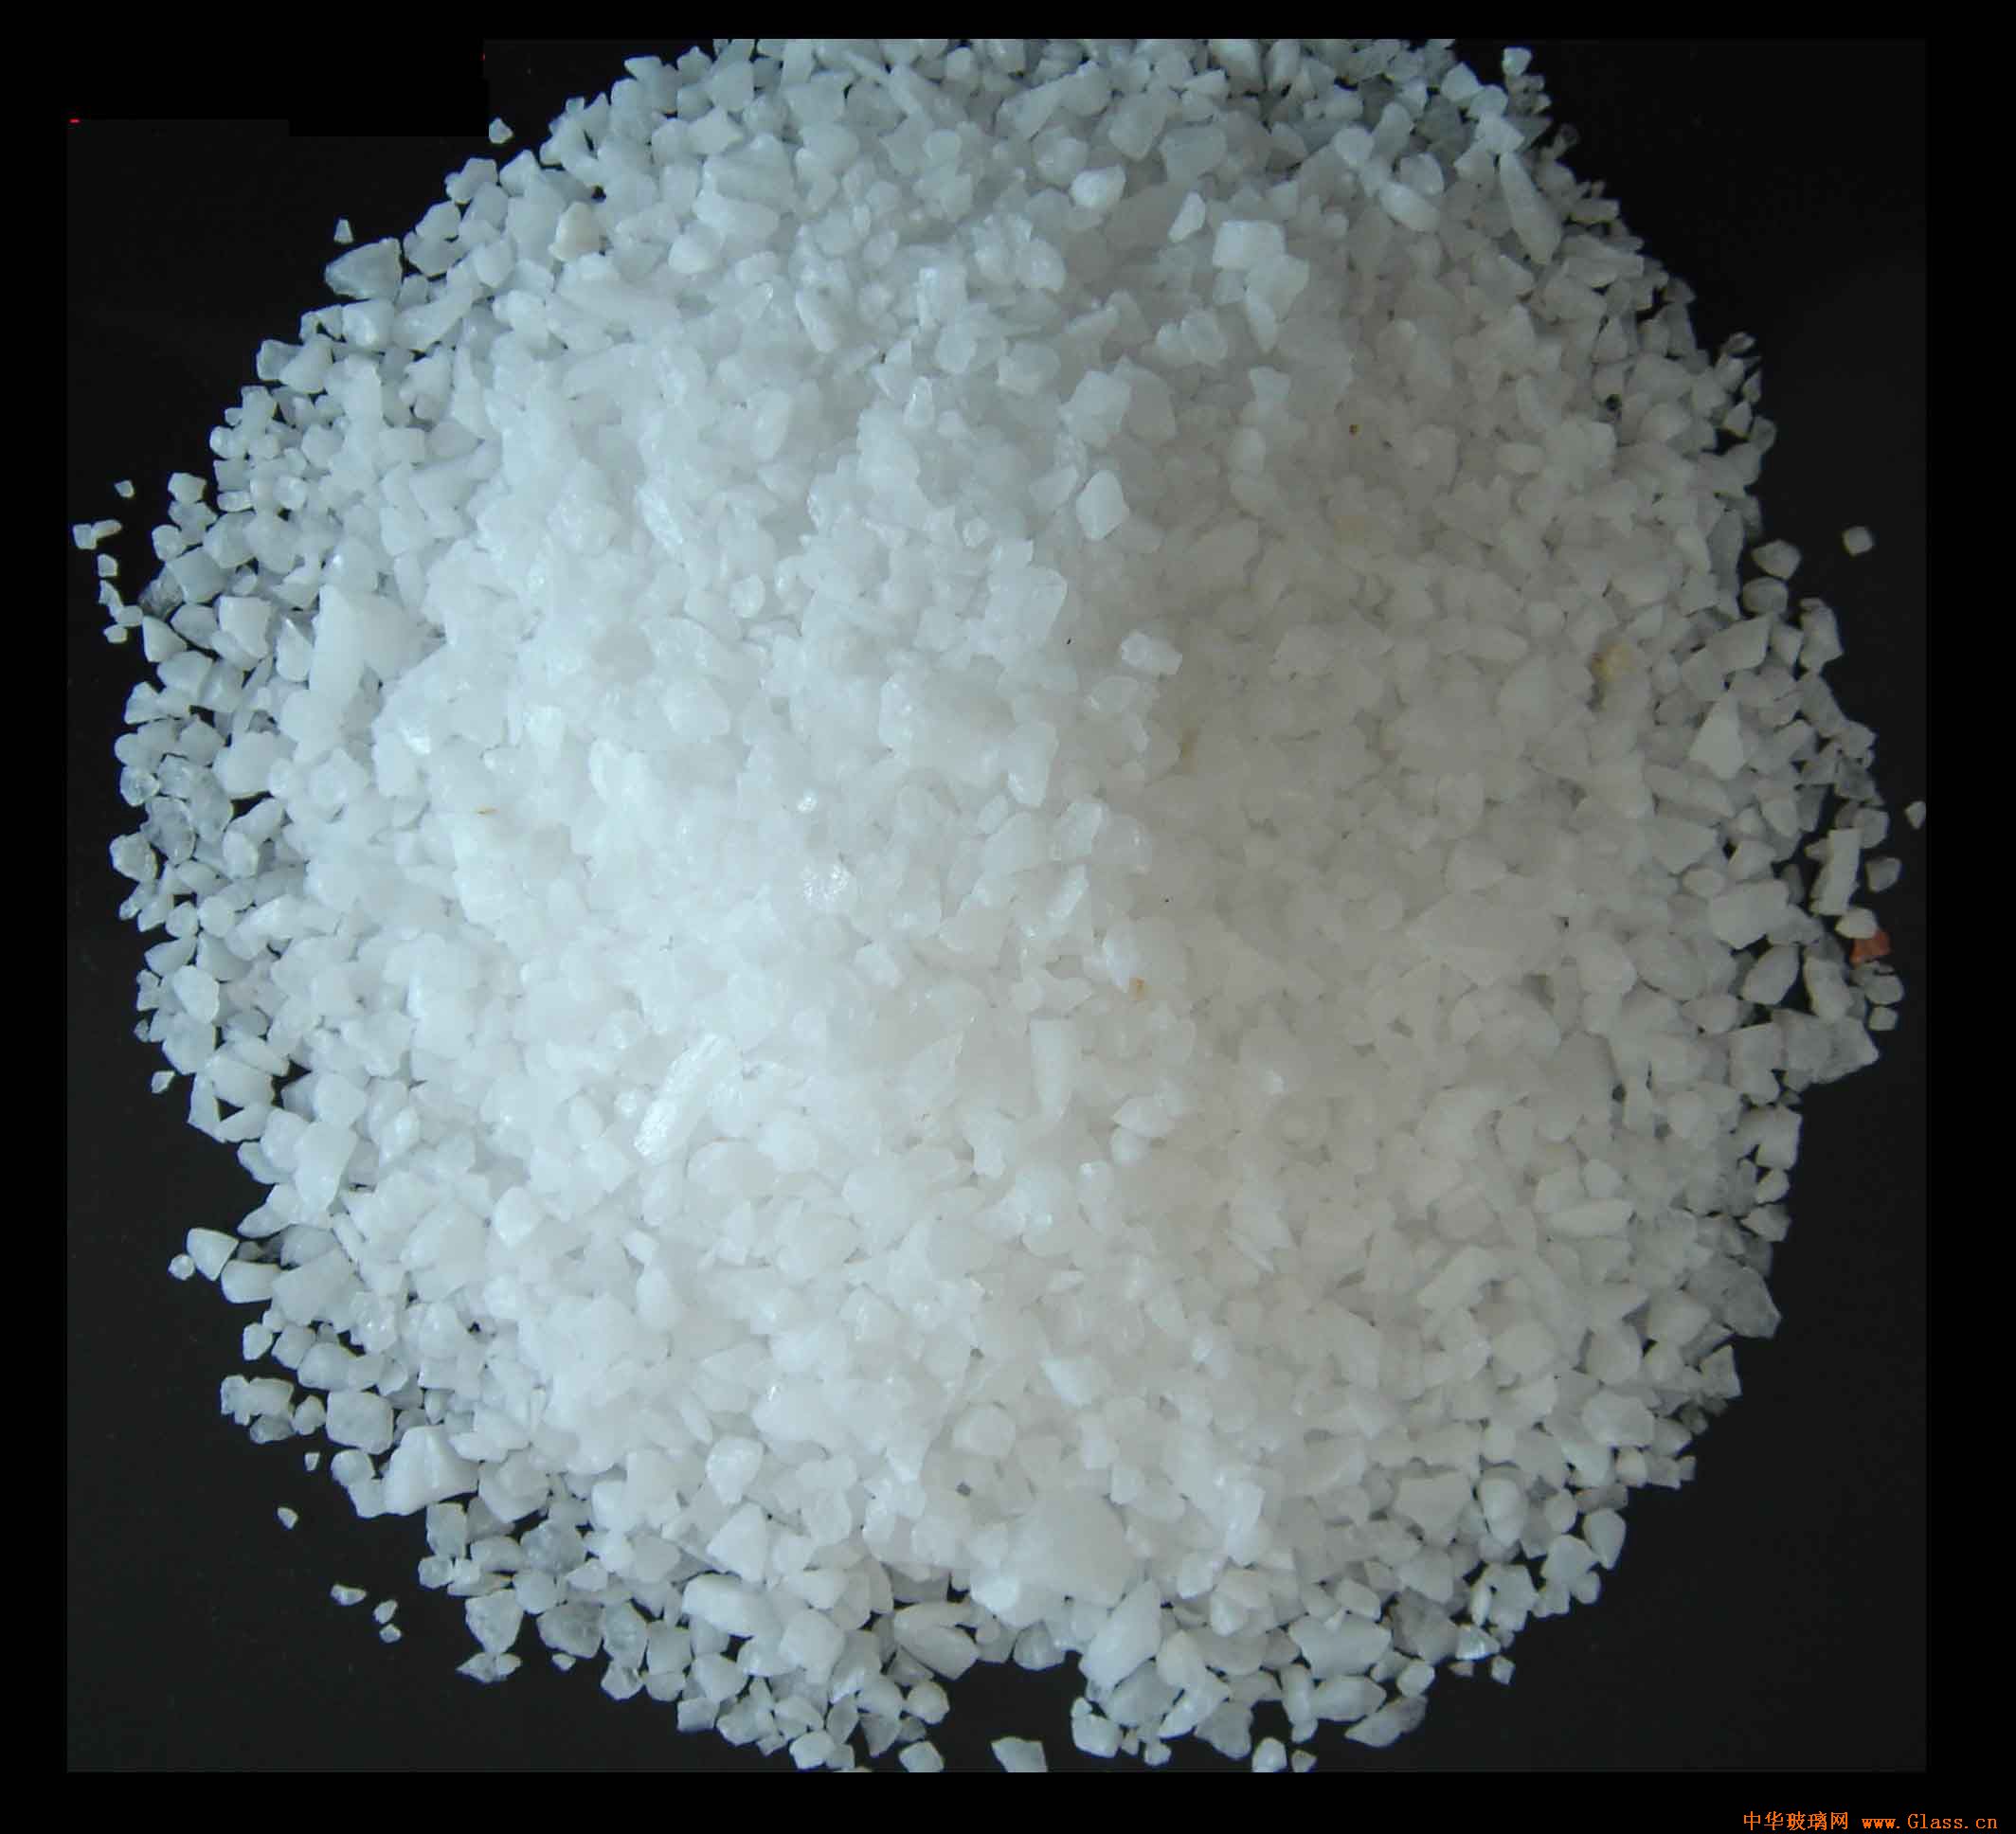 石英砂是石英石經破碎加工而成的石英顆粒，石英石是一種非金屬礦物質，是一種堅硬、耐磨、化學性能穩定的硅酸鹽礦物，其主要礦物成分是SiO2。